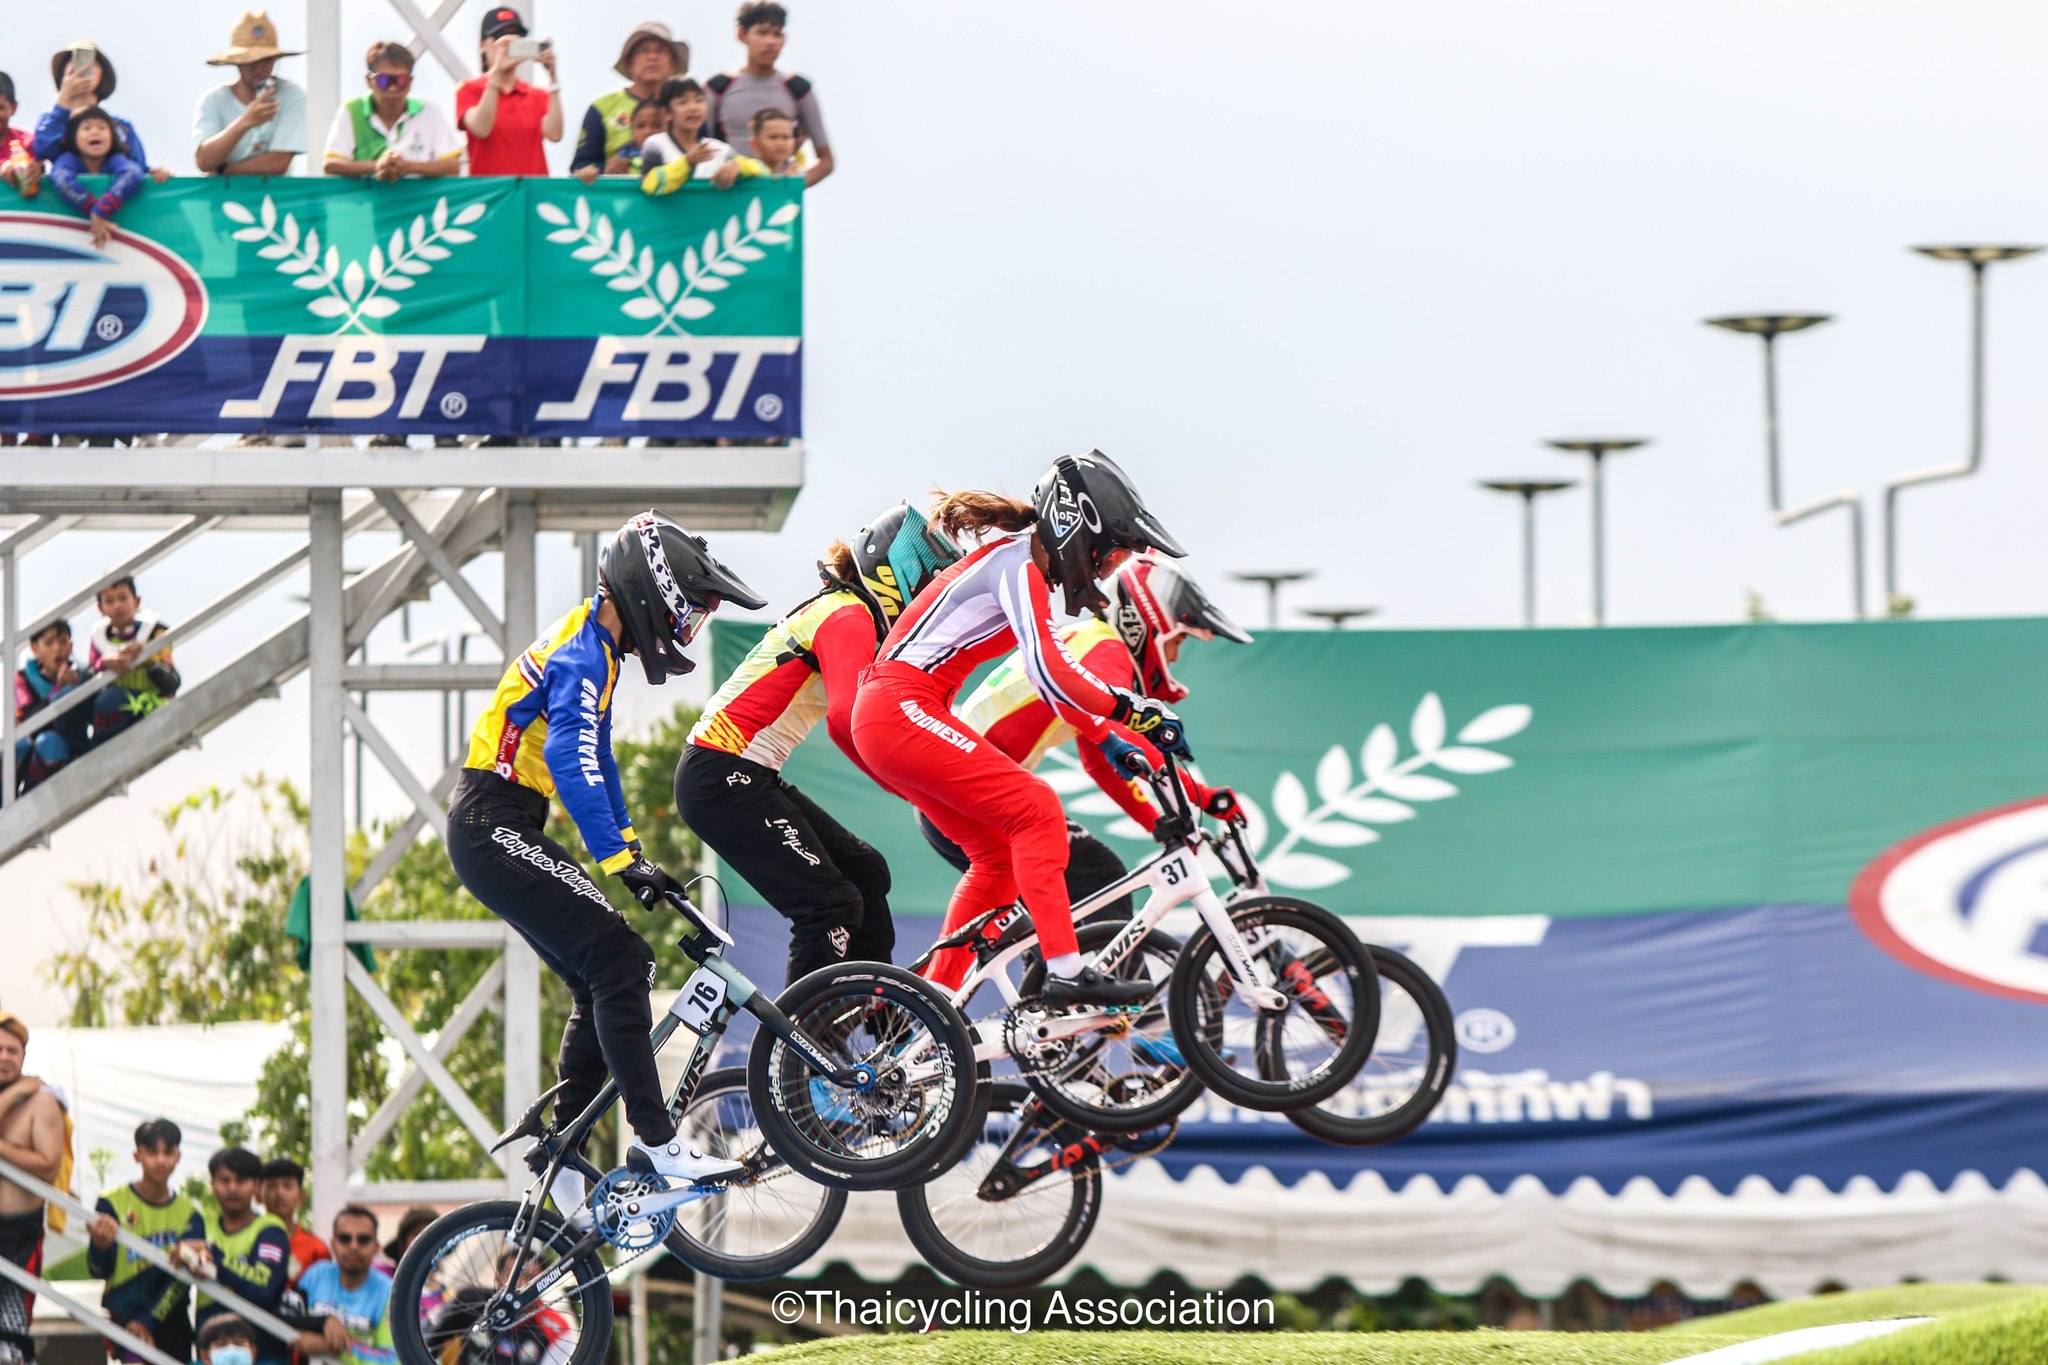 การแข่งขันจักรยานประเภทบีเอ็มเอ็กซ์ ชิงแชมป์ประเทศไทย ชิงถ้วยพระราชทานฯ สนามที่ 4  ประจำปี 2566